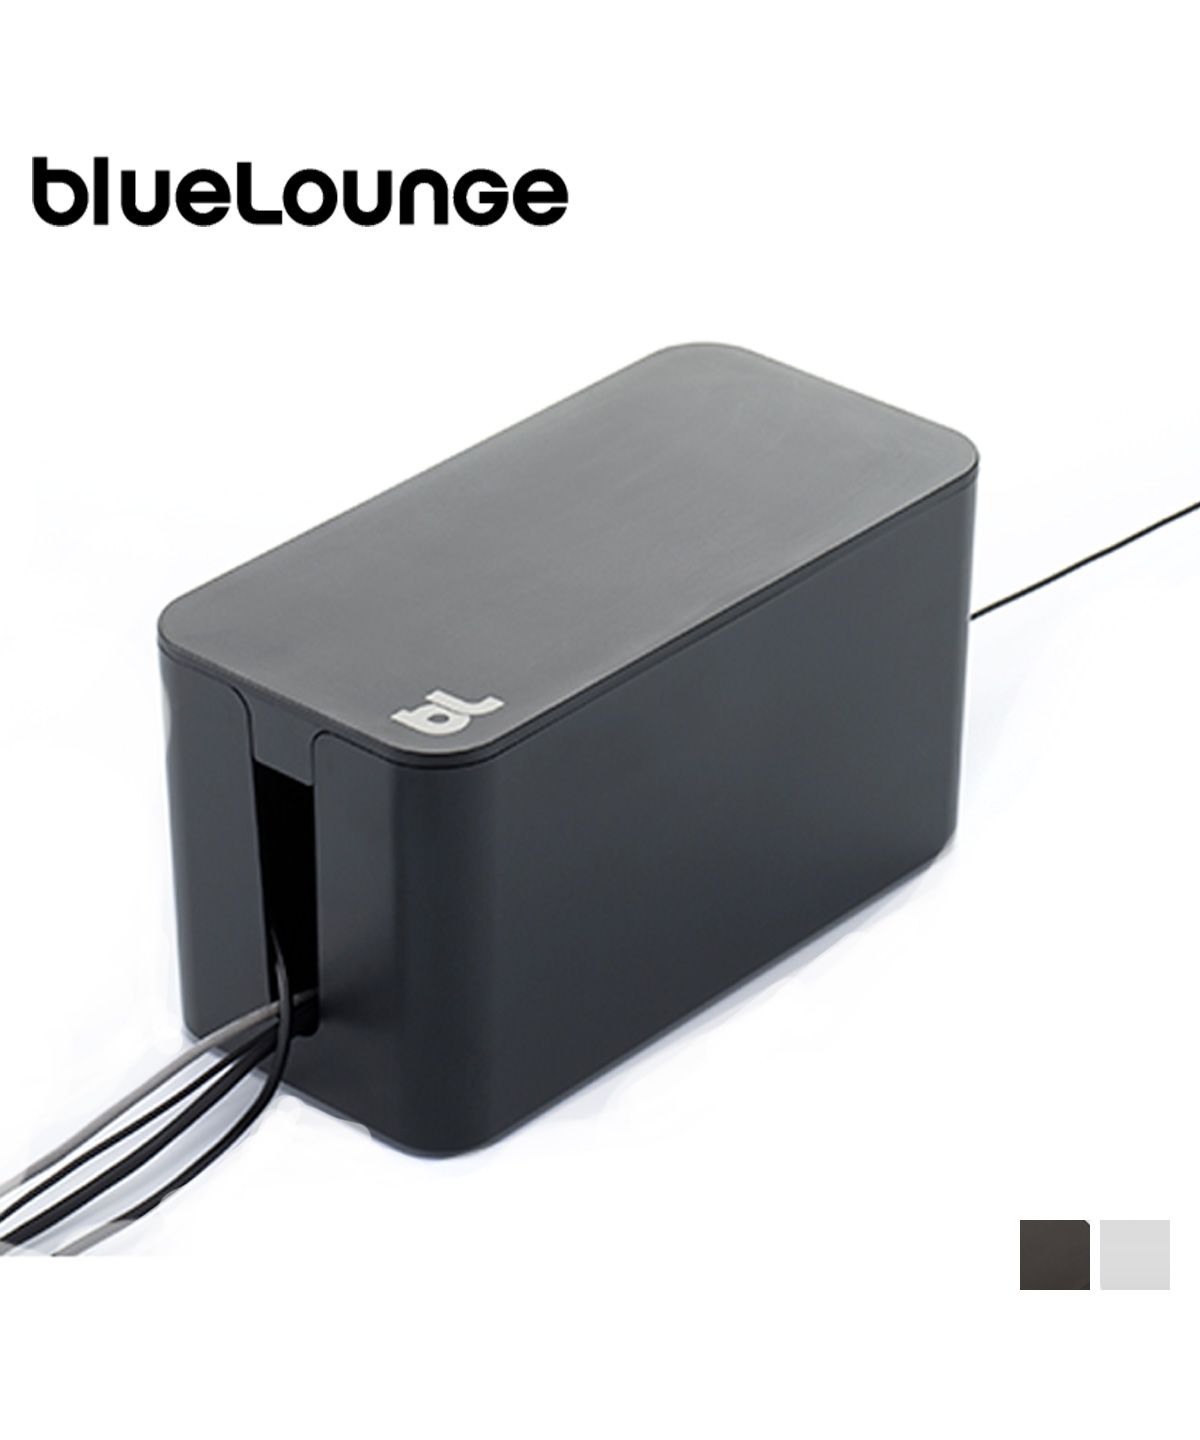 Bluelounge ブルーラウンジ 充電 マルチ ケーブル ボックス ミニ パソコン PC USBケーブル CABLE BOX MINI ブラック  ホワイト